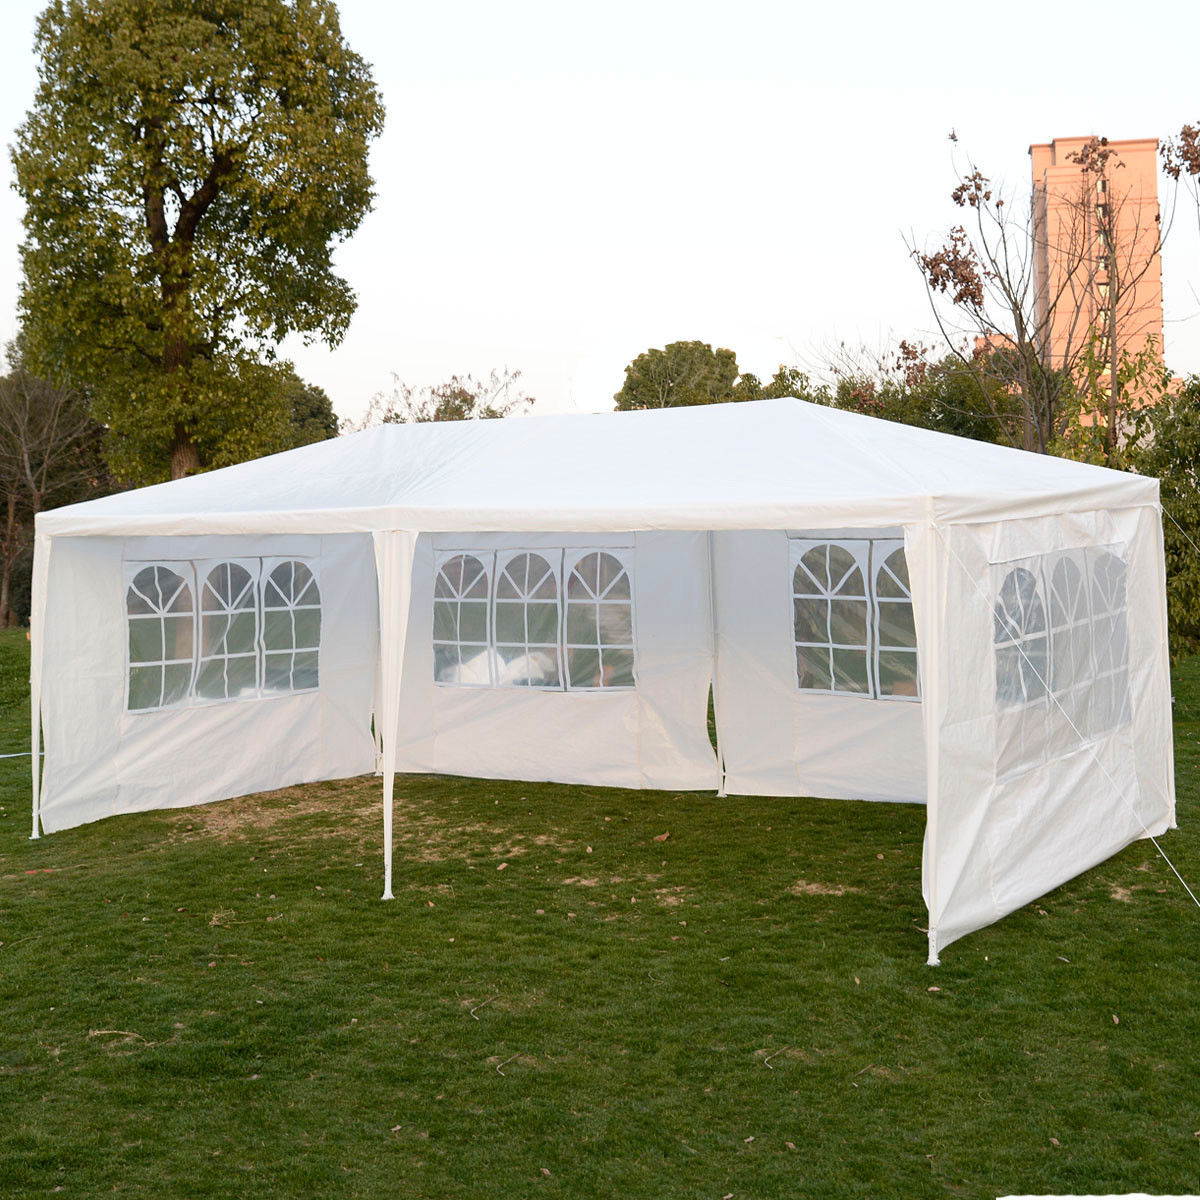 10 x 20 White Party Tent Canopy Gazebo w/ 4 Sidewalls